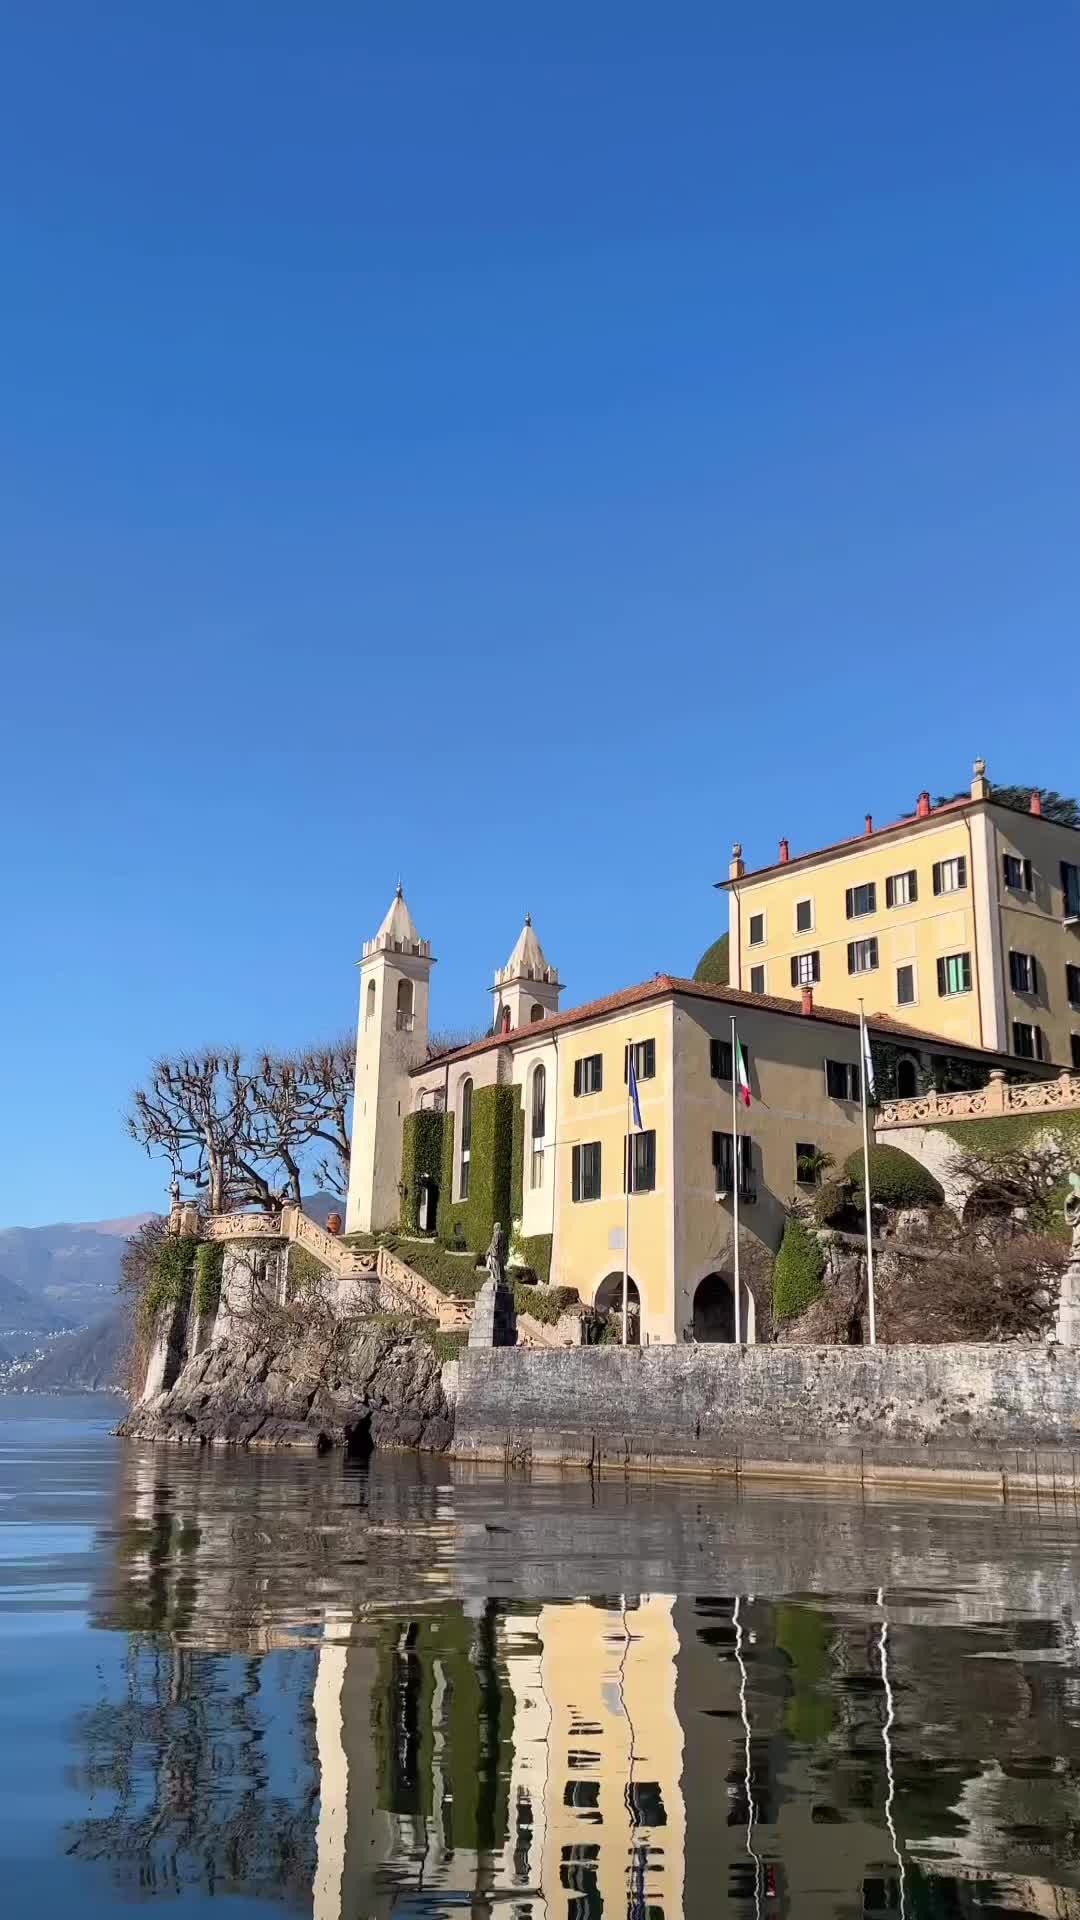 Villa Balbianello: Lake Como’s Hidden Gem in Italy